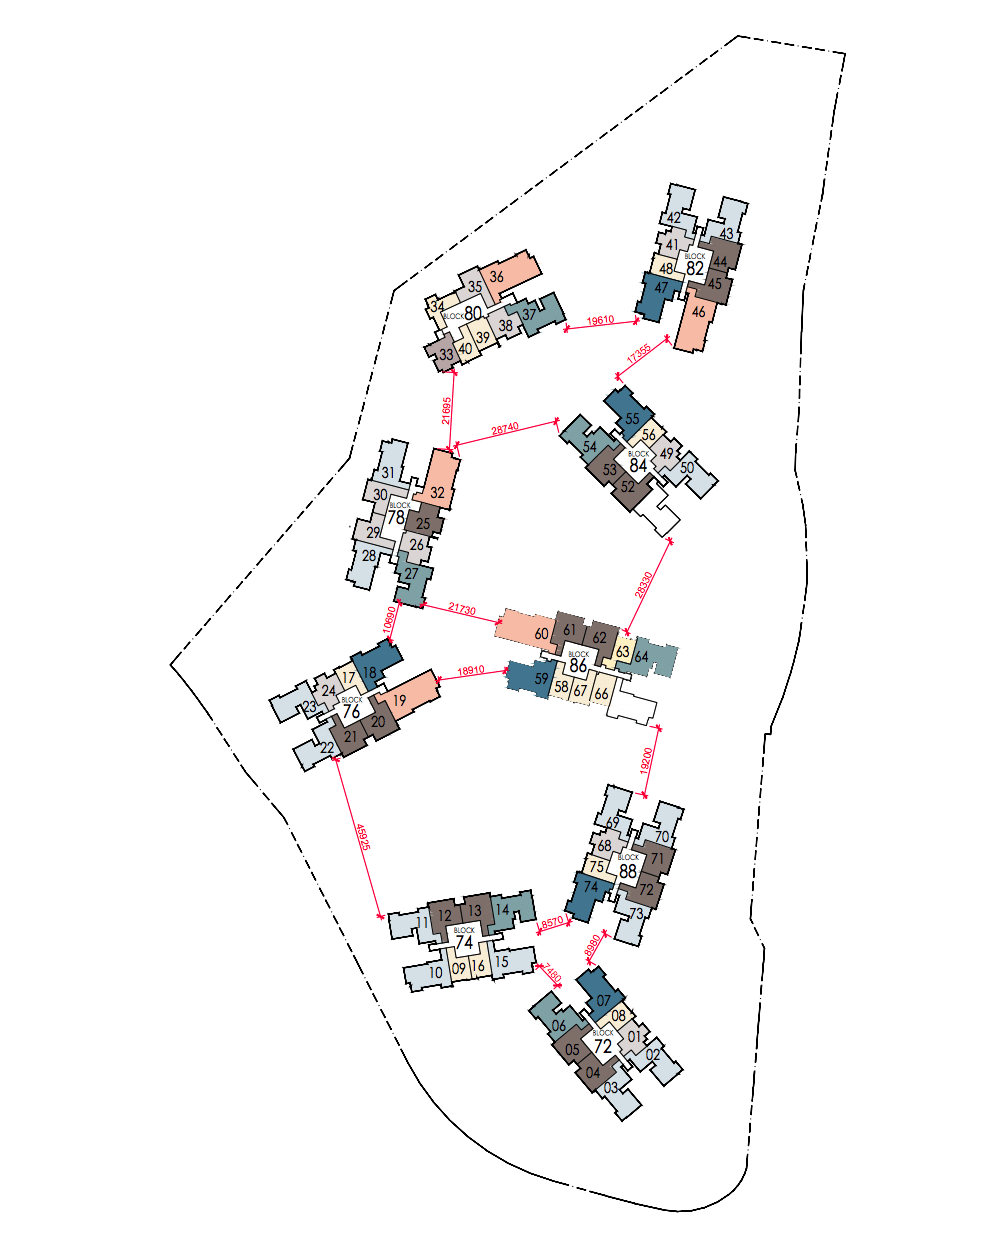 Sengkang Grand Site Plan showing Distances between blocks